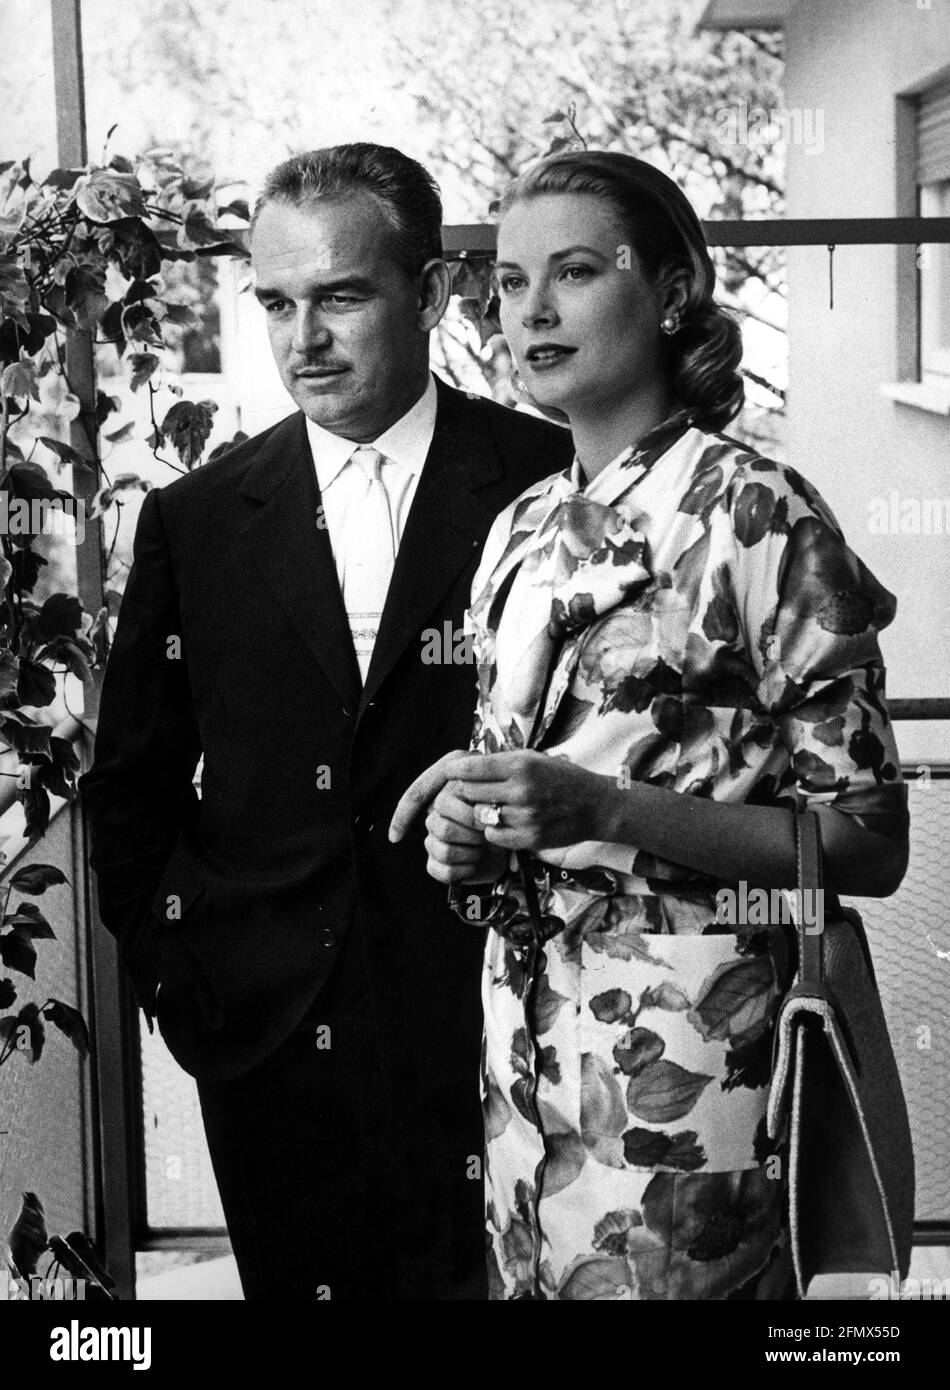 Rainier III, 31.5.1923 - 6.4.2005, Prince de Monaco, demi-longueur, avec sa femme Gracia Patricia, DROITS-SUPPLÉMENTAIRES-AUTORISATION-INFO-NON-DISPONIBLE Banque D'Images